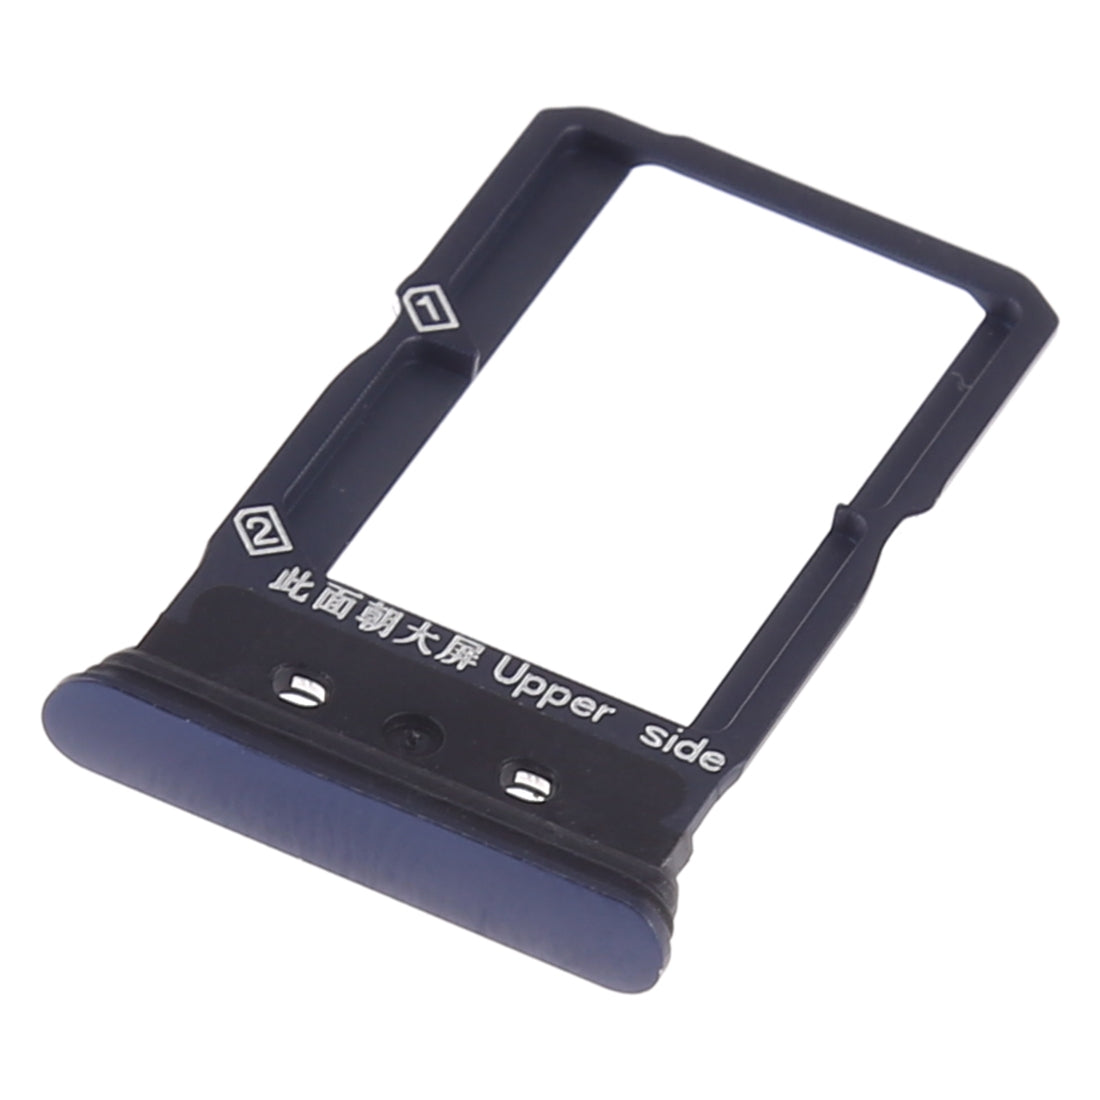 Dual SIM Vivo NEX Black SIM Holder Tray